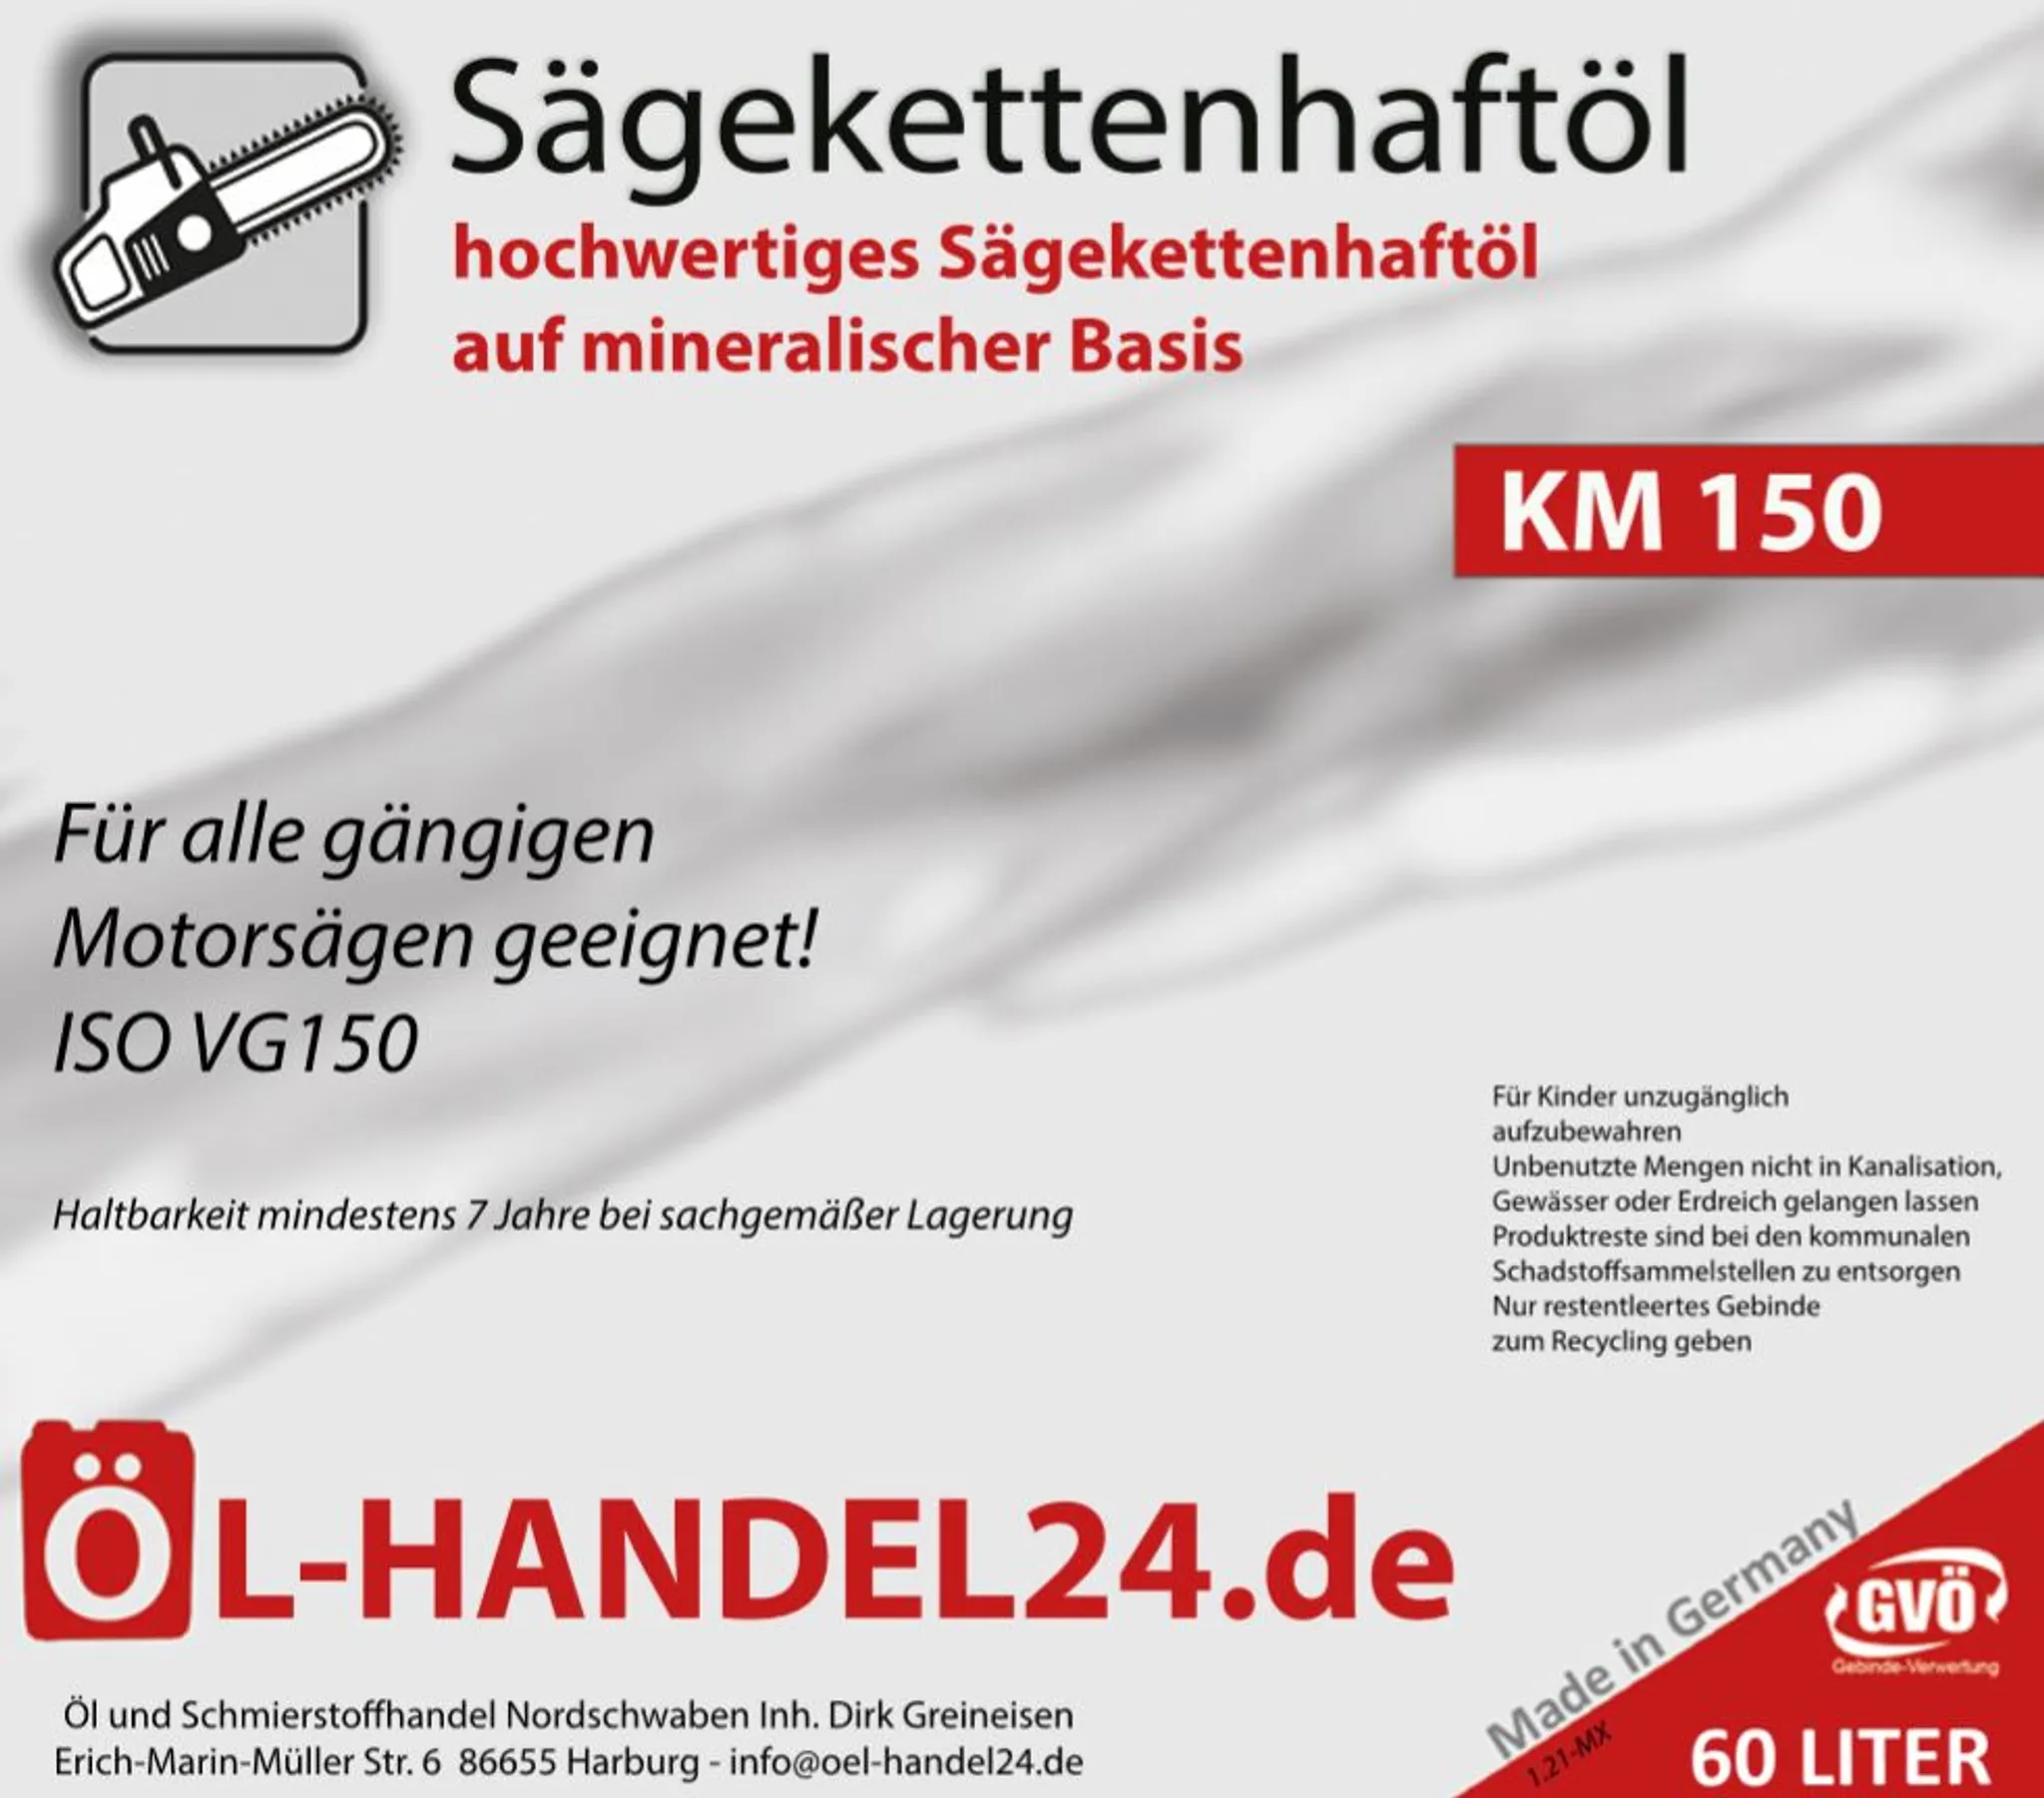 KETTLITZ Medialub 2000 Bio Kettenöl für Motorsägen 20 l Kanister